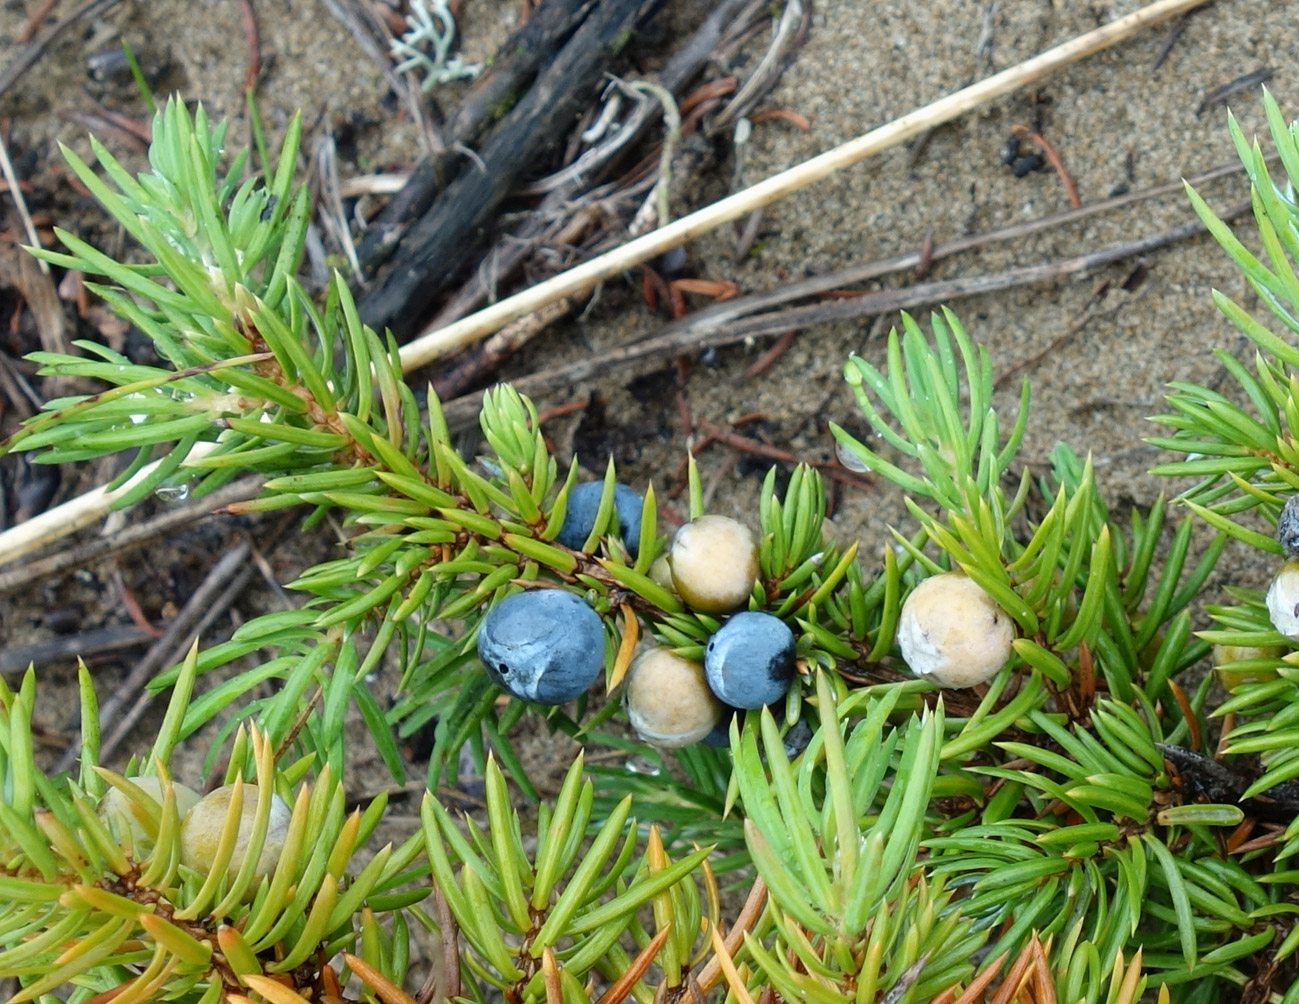 Image of Juniperus sibirica specimen.